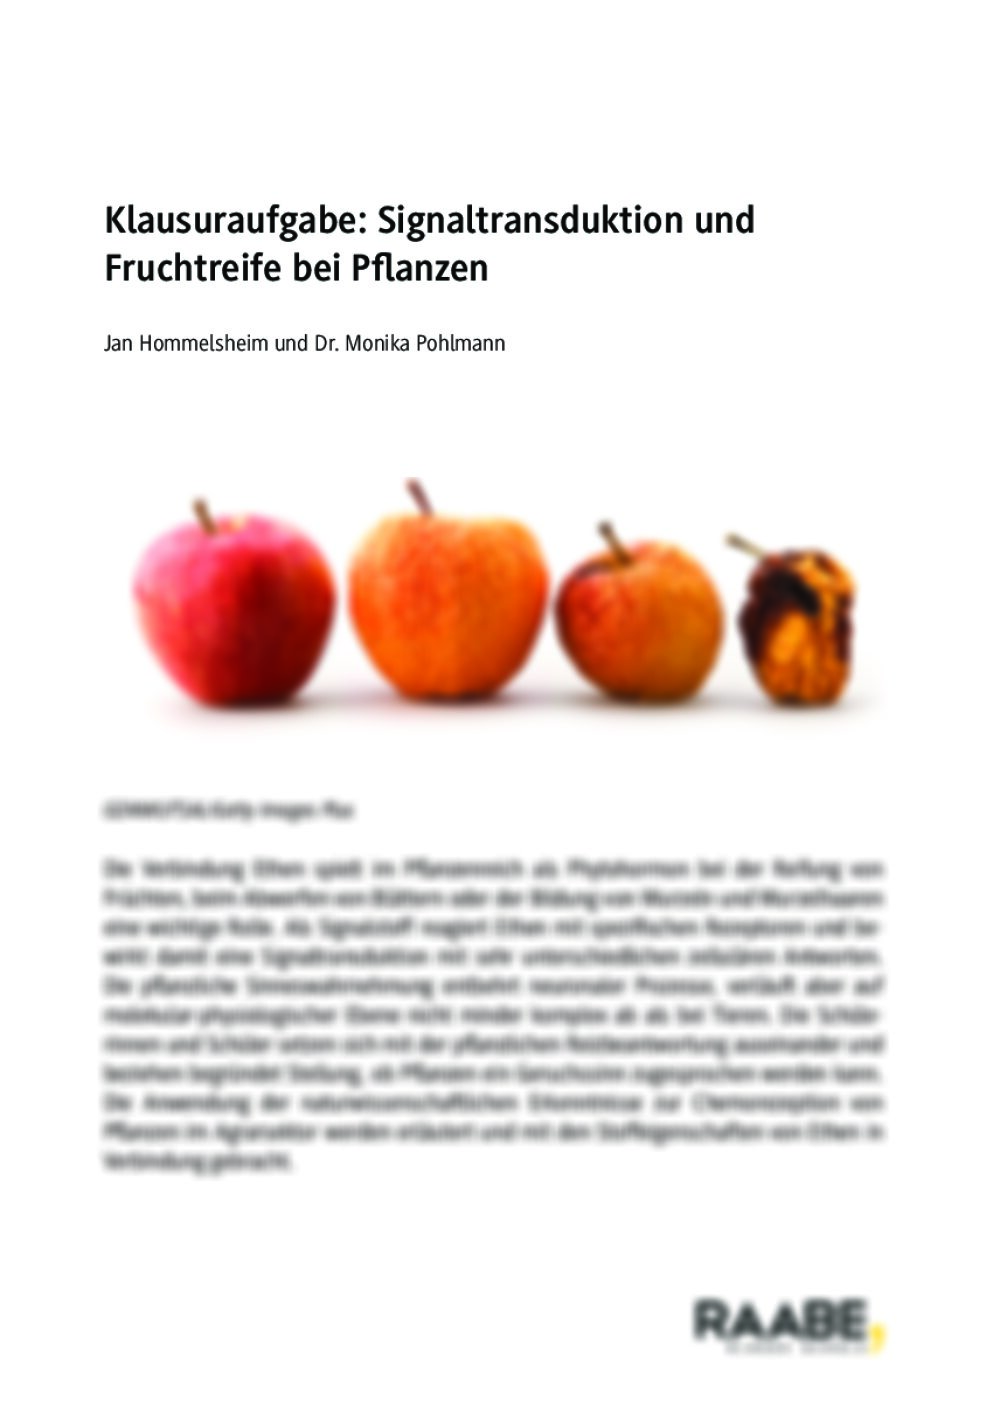 Klausuraufgabe: Signaltransduktion und Fruchtreife bei Pflanzen  - Seite 1